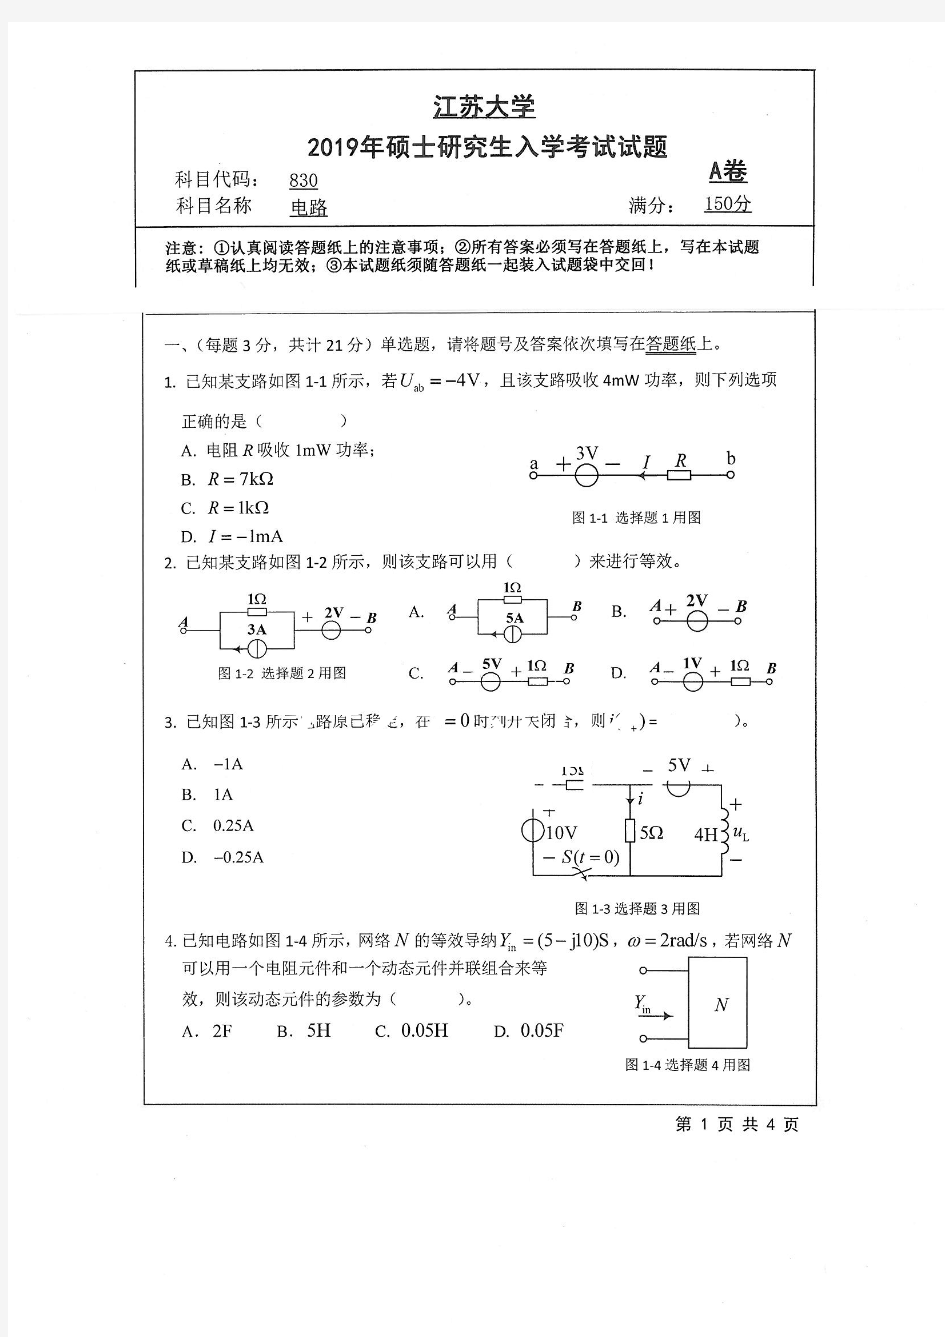 江苏大学830电路专业课考研真题(2019年)